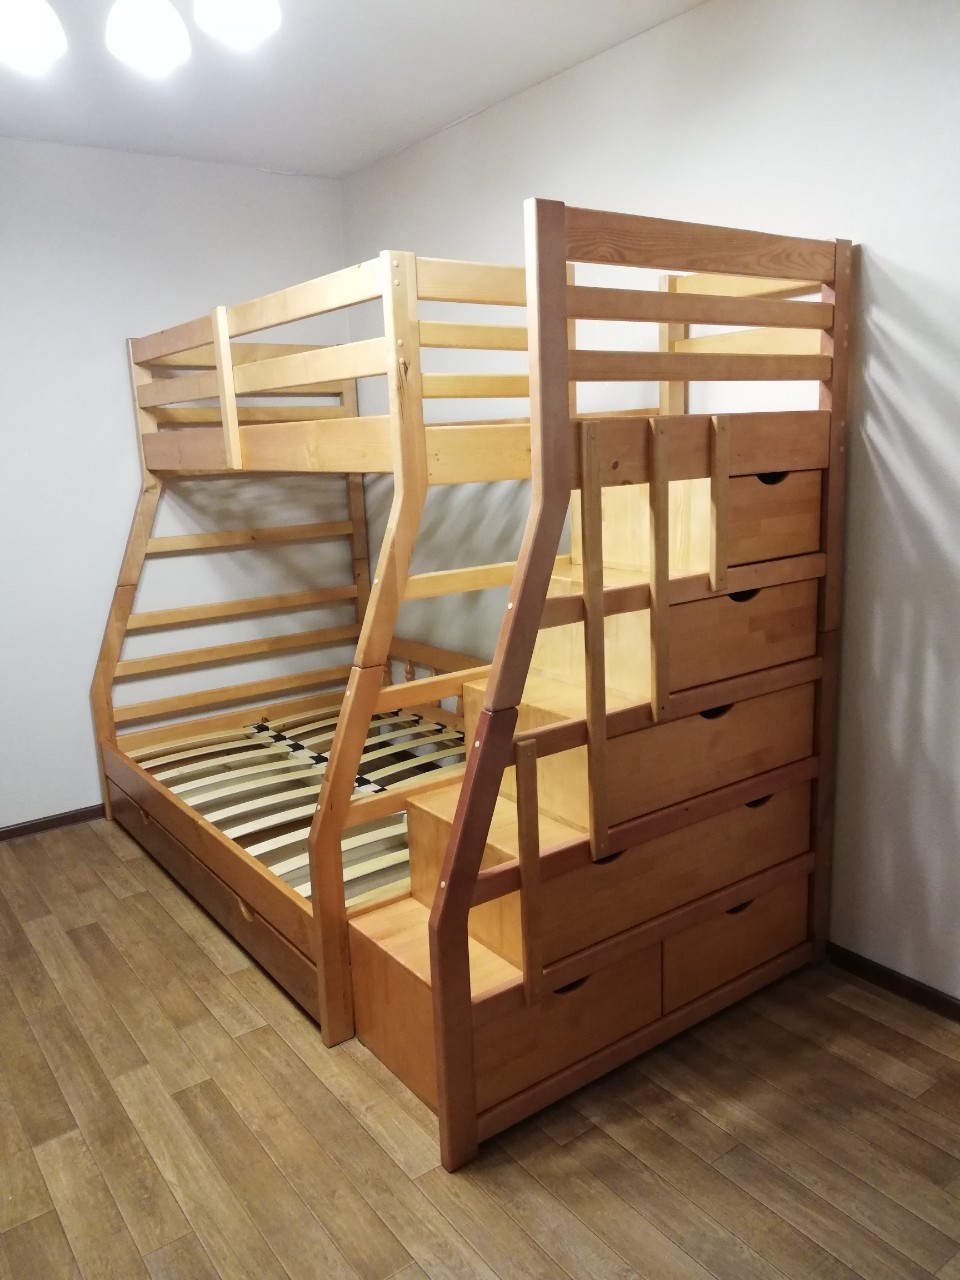 кровать двухъярусная деревянная детская с лестницей ящиками